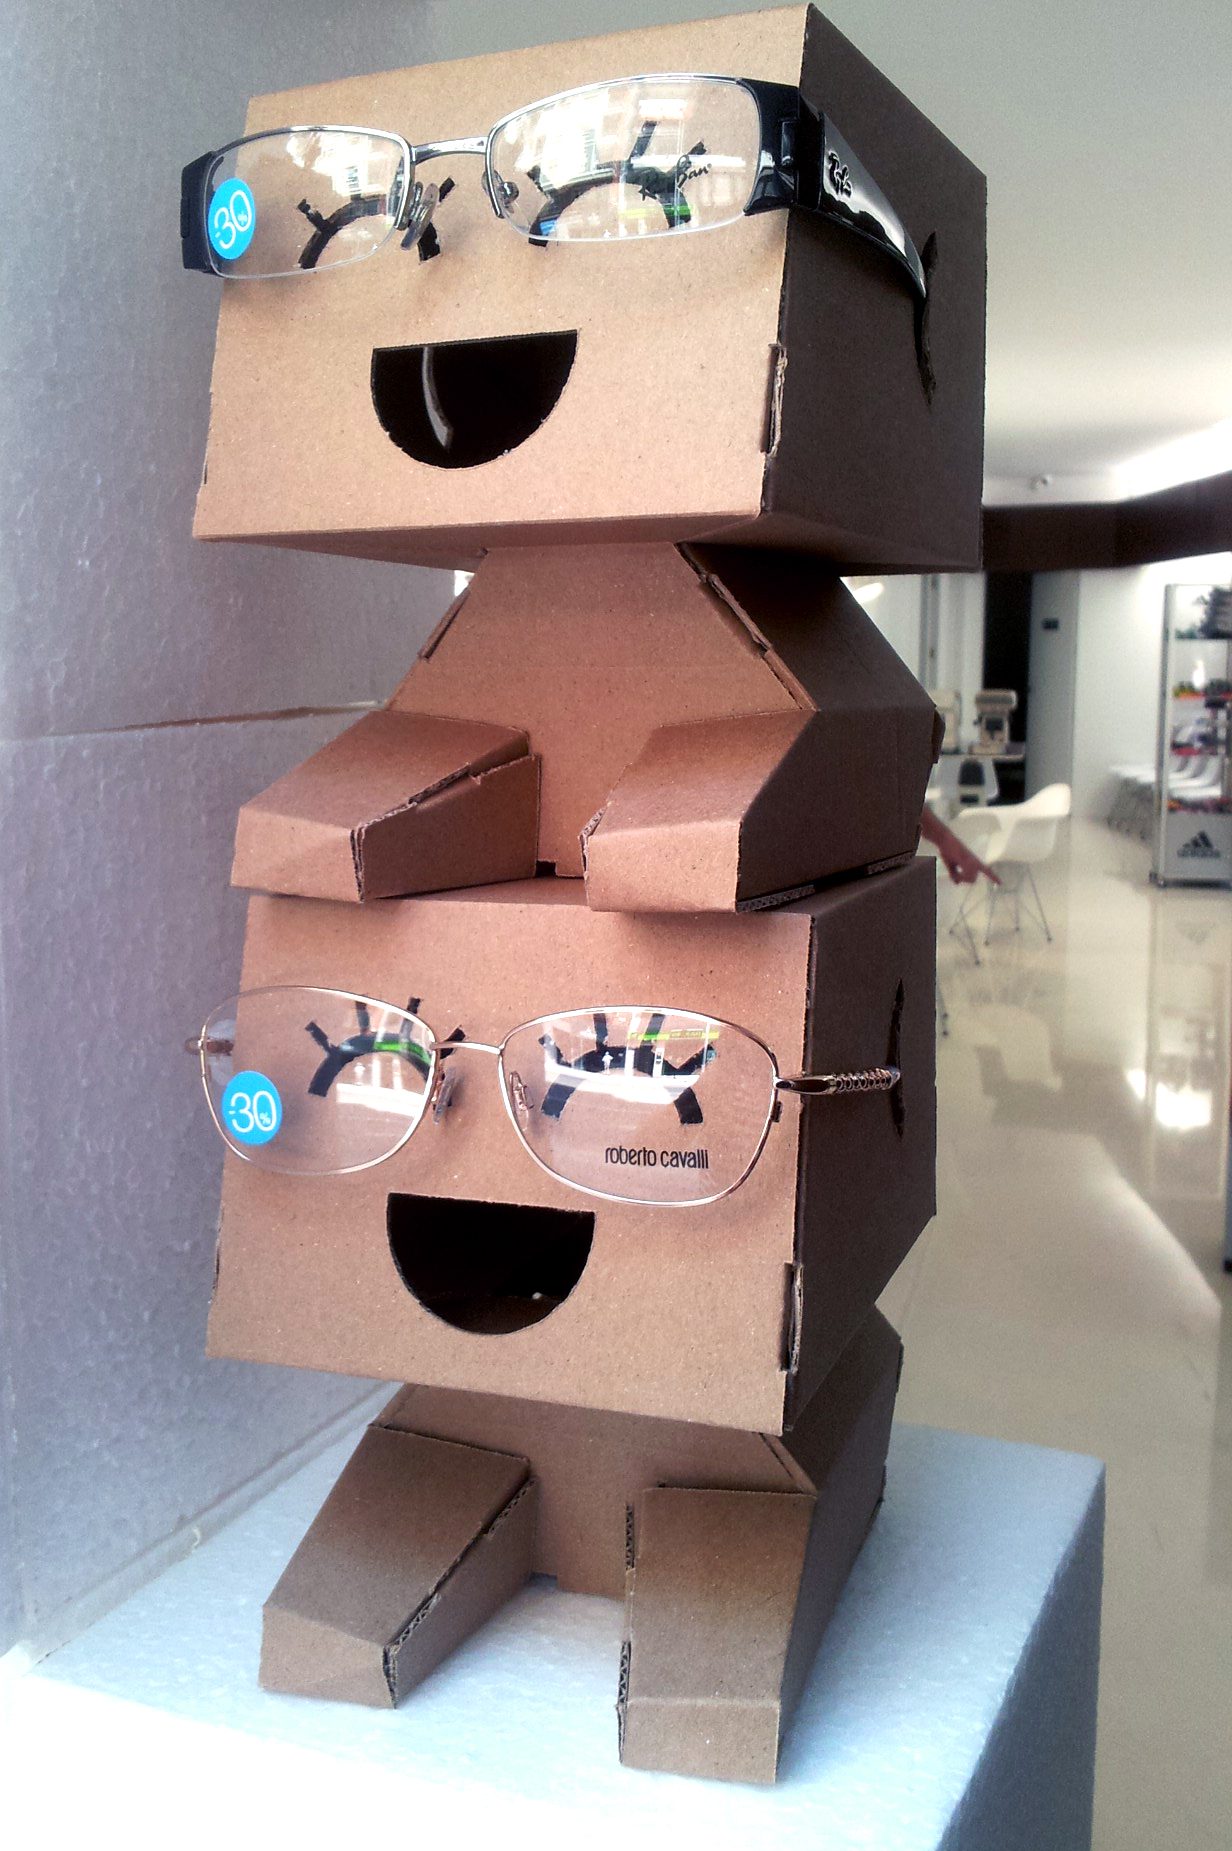 Diseño de Optica figuras carton expositor gafas 04